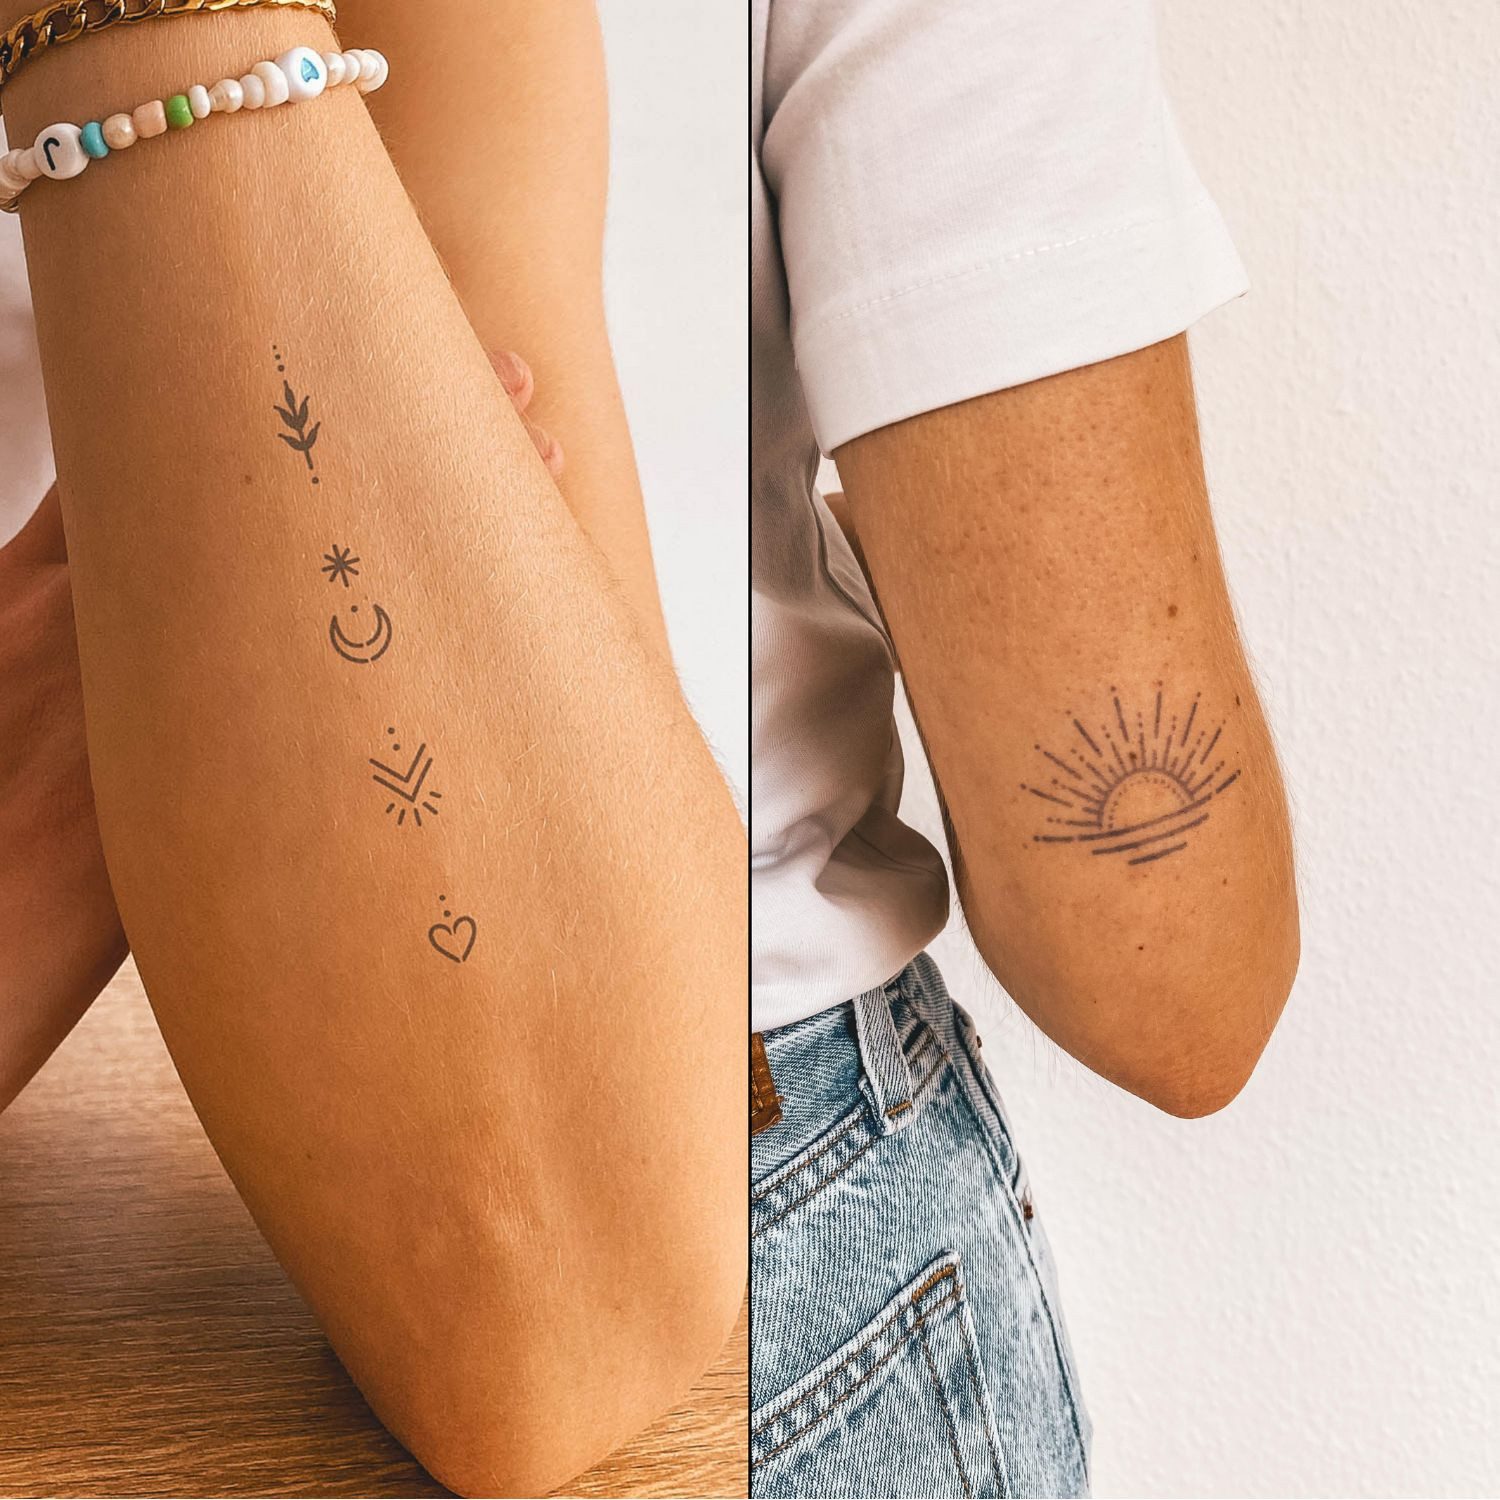 Inkster Schmuck-Tattoo verschiedene Doppelpacks - aus 100% pflanzlicher Farbe, wasserfestes temporäres Tattoo, 2 Wochen Halt